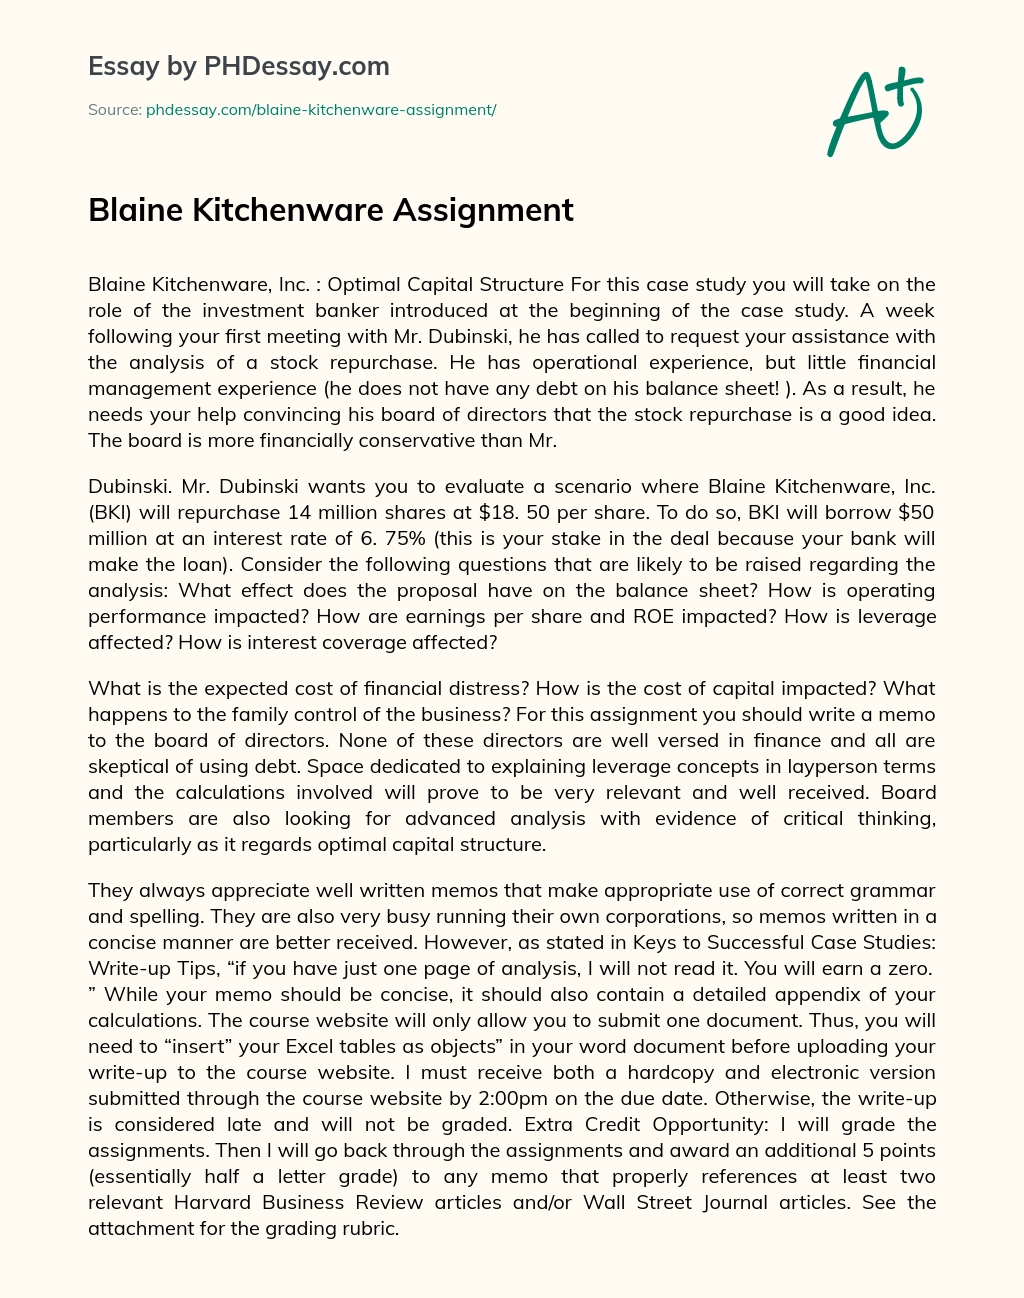 Blaine Kitchenware essay